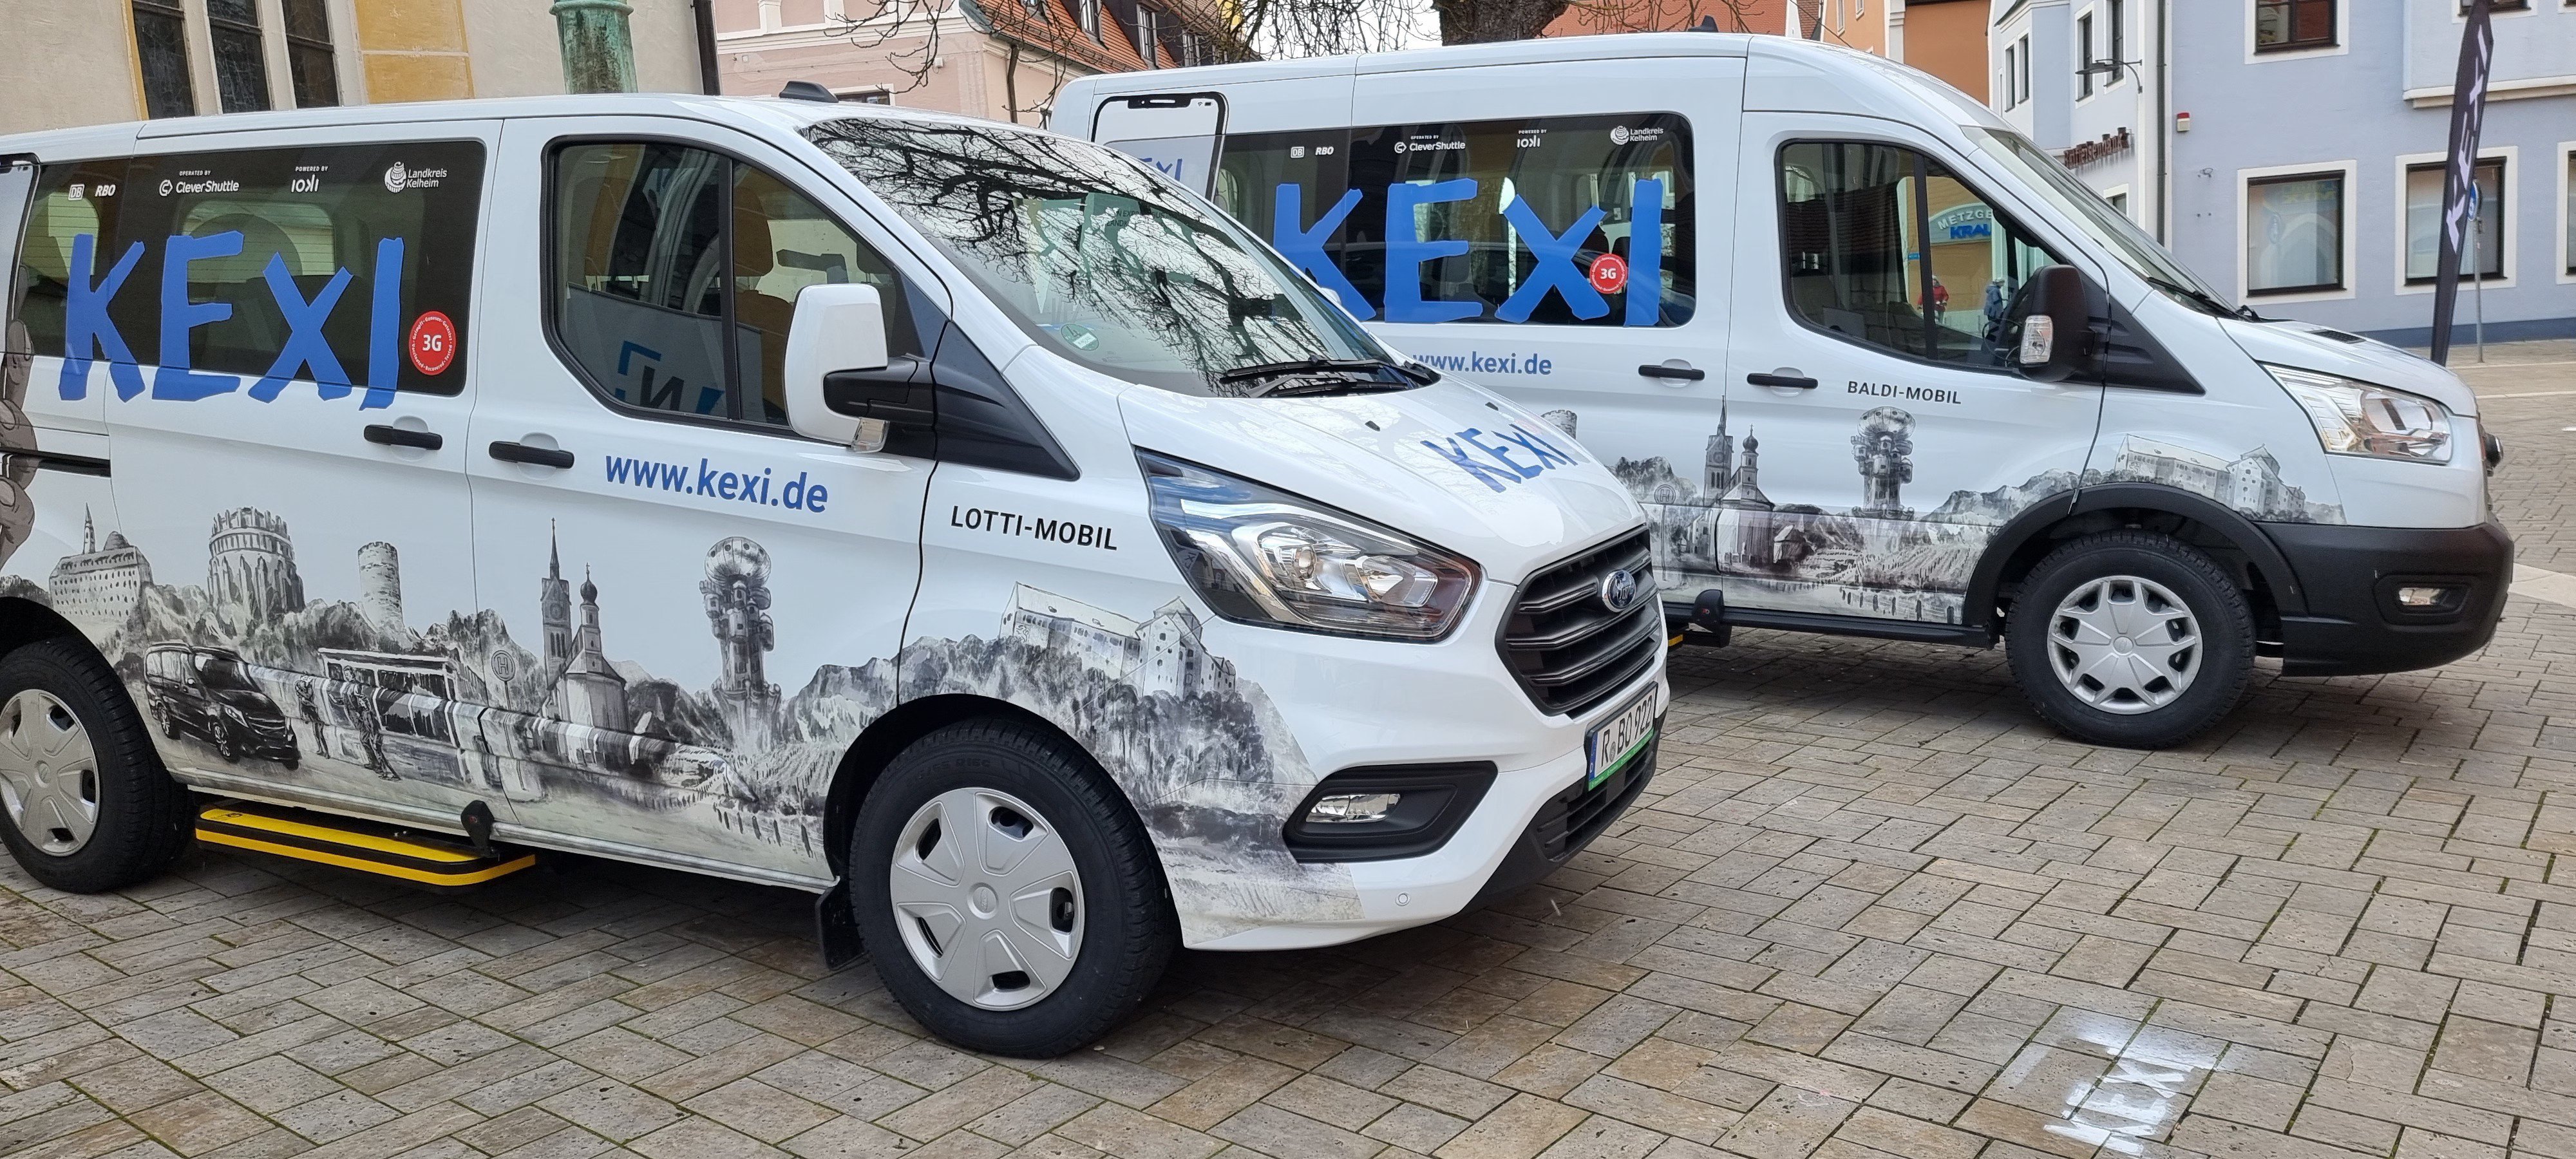 Flexibel mobil in Neustadt/Do.: On-Demand-Service „KEXI“ startet